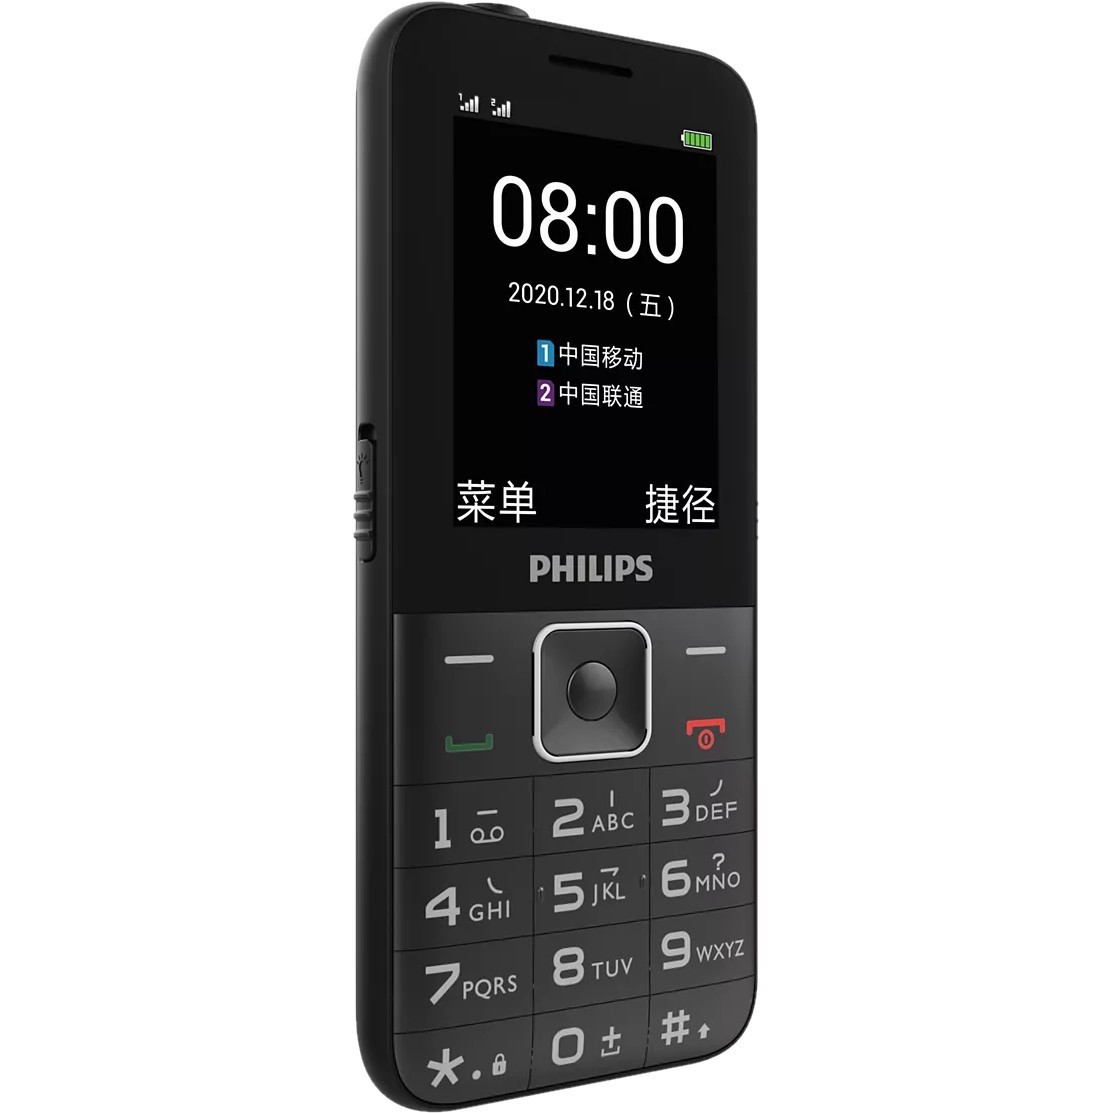 Филипс 590 телефон